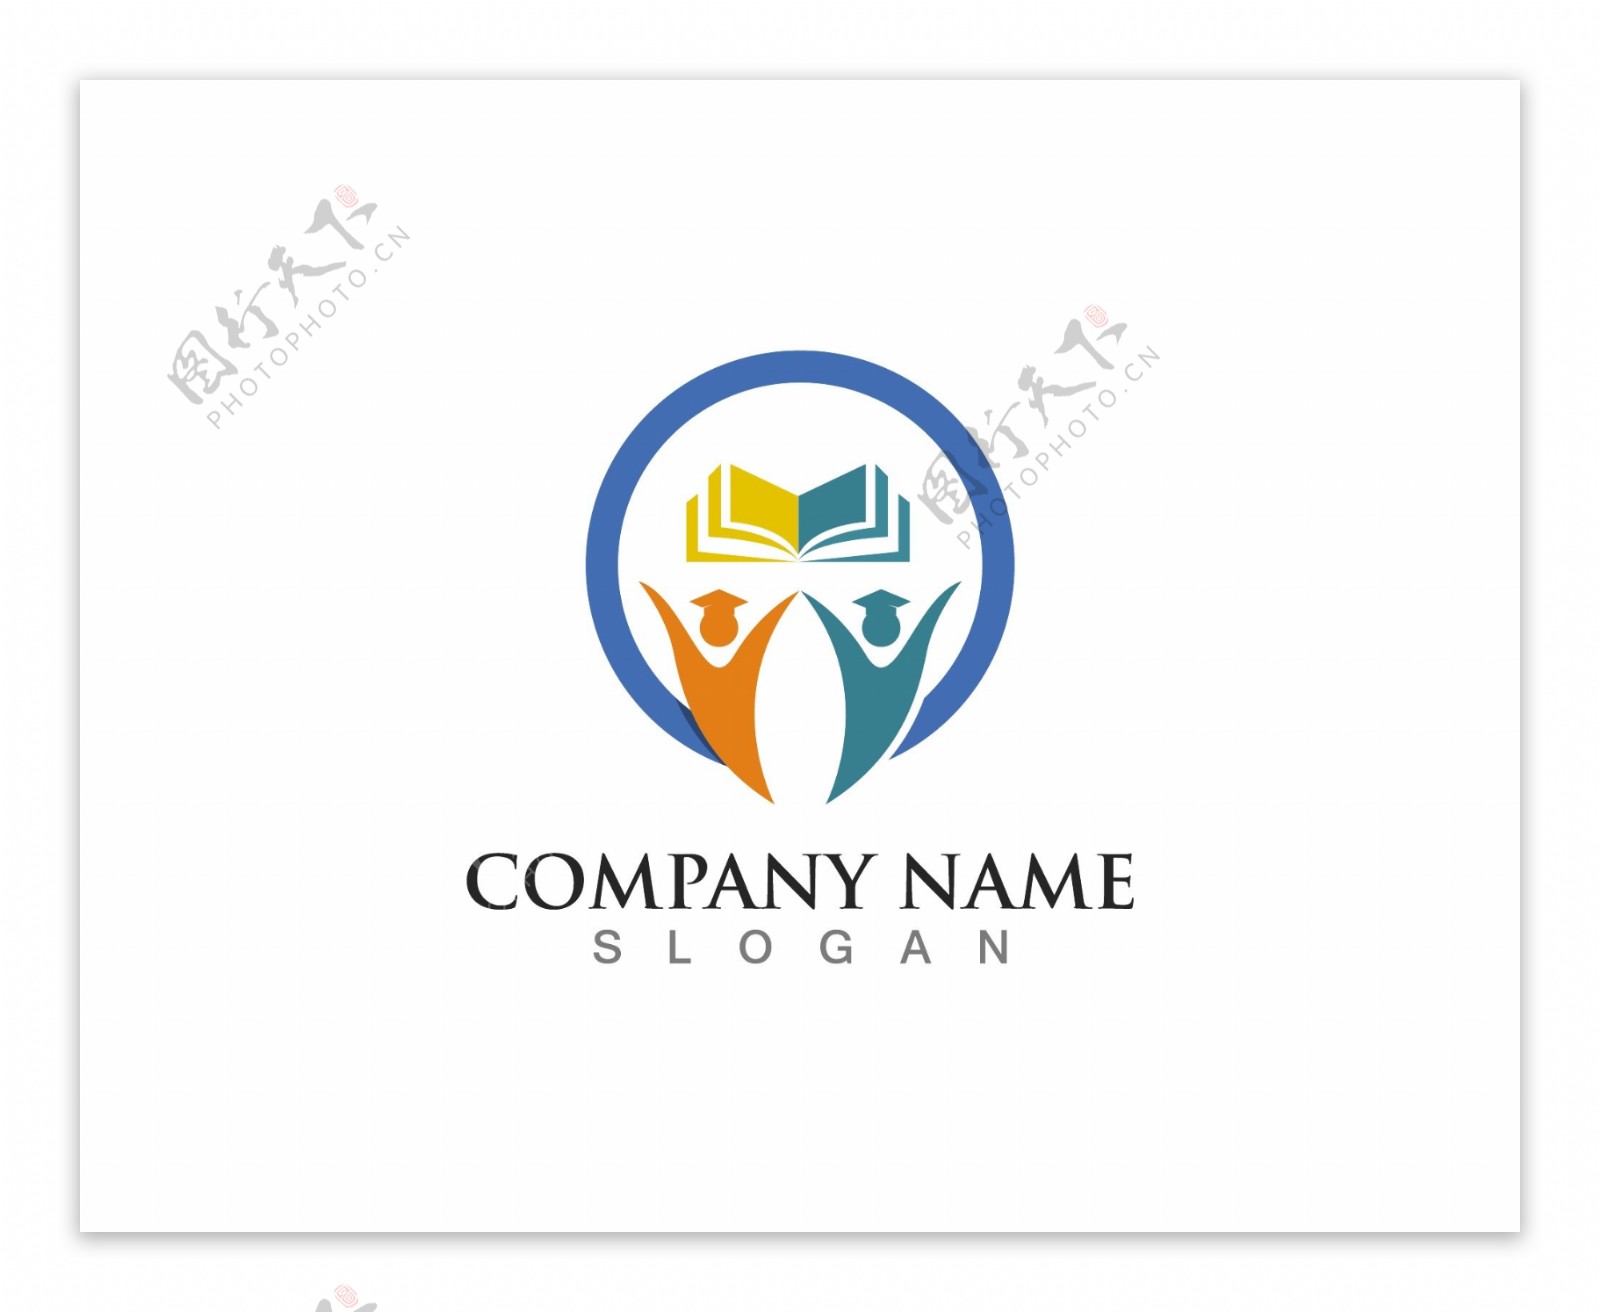 教育logo设计